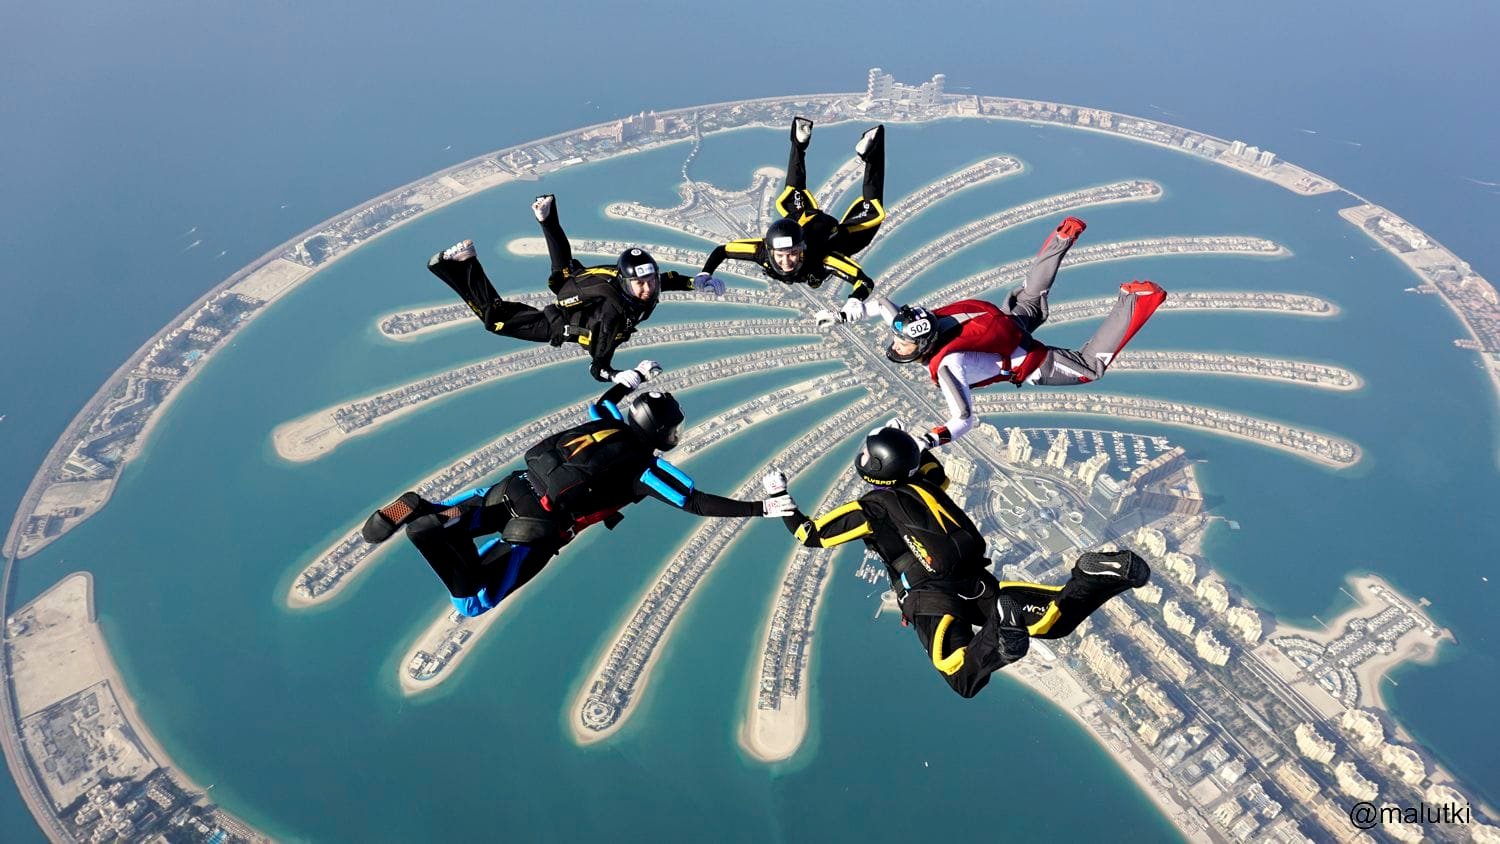 Skydive Adventure in UAE